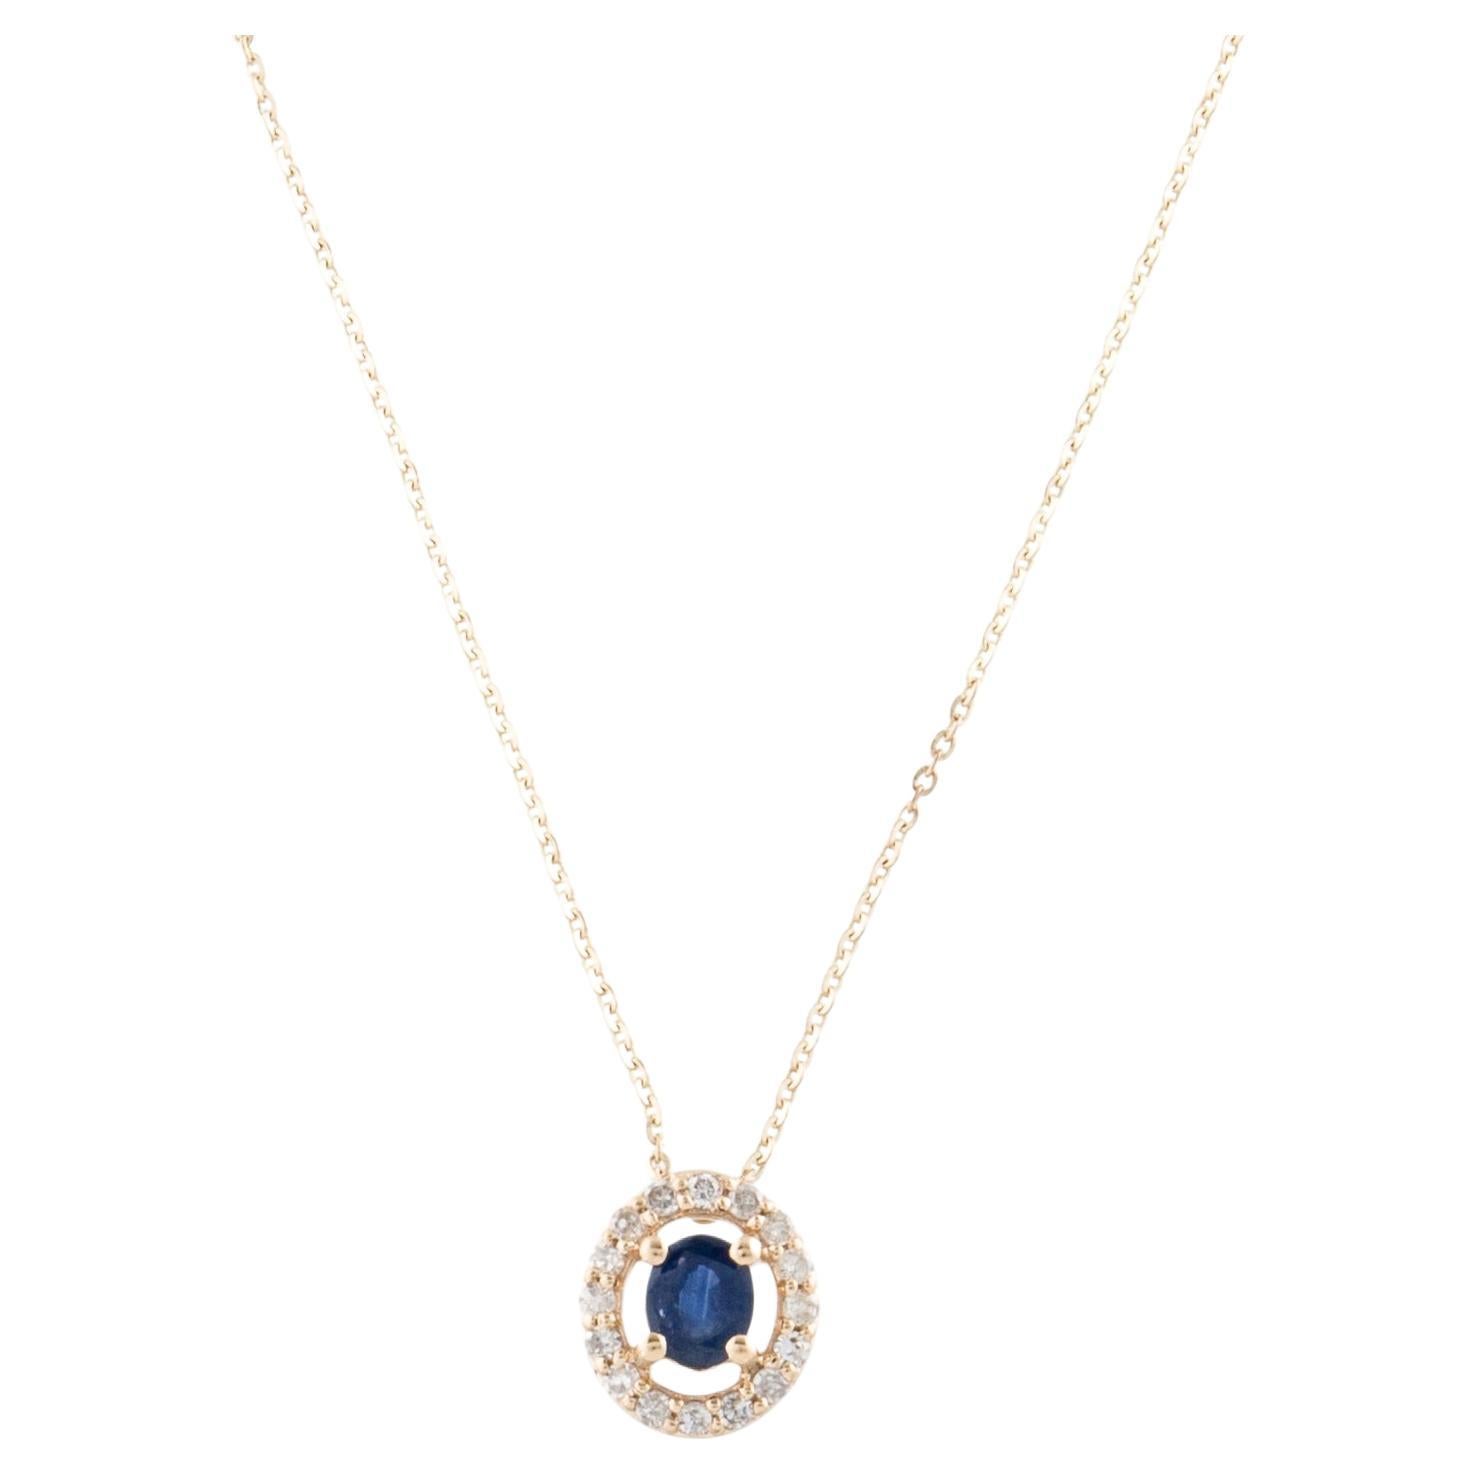 Élégant collier pendentif halo de saphirs 14 carats et diamants - pierre précieuse scintillante